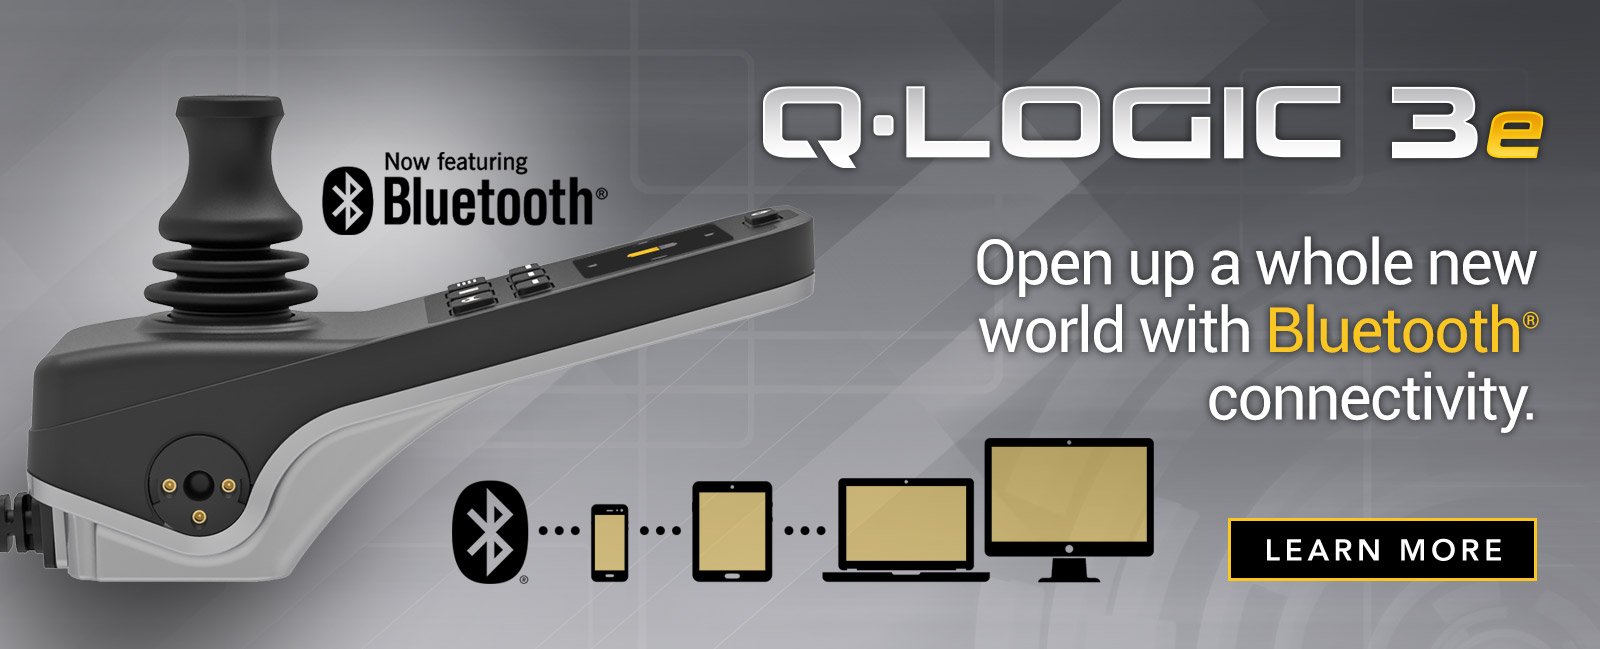 Q-Logic 3 - Bluetooth